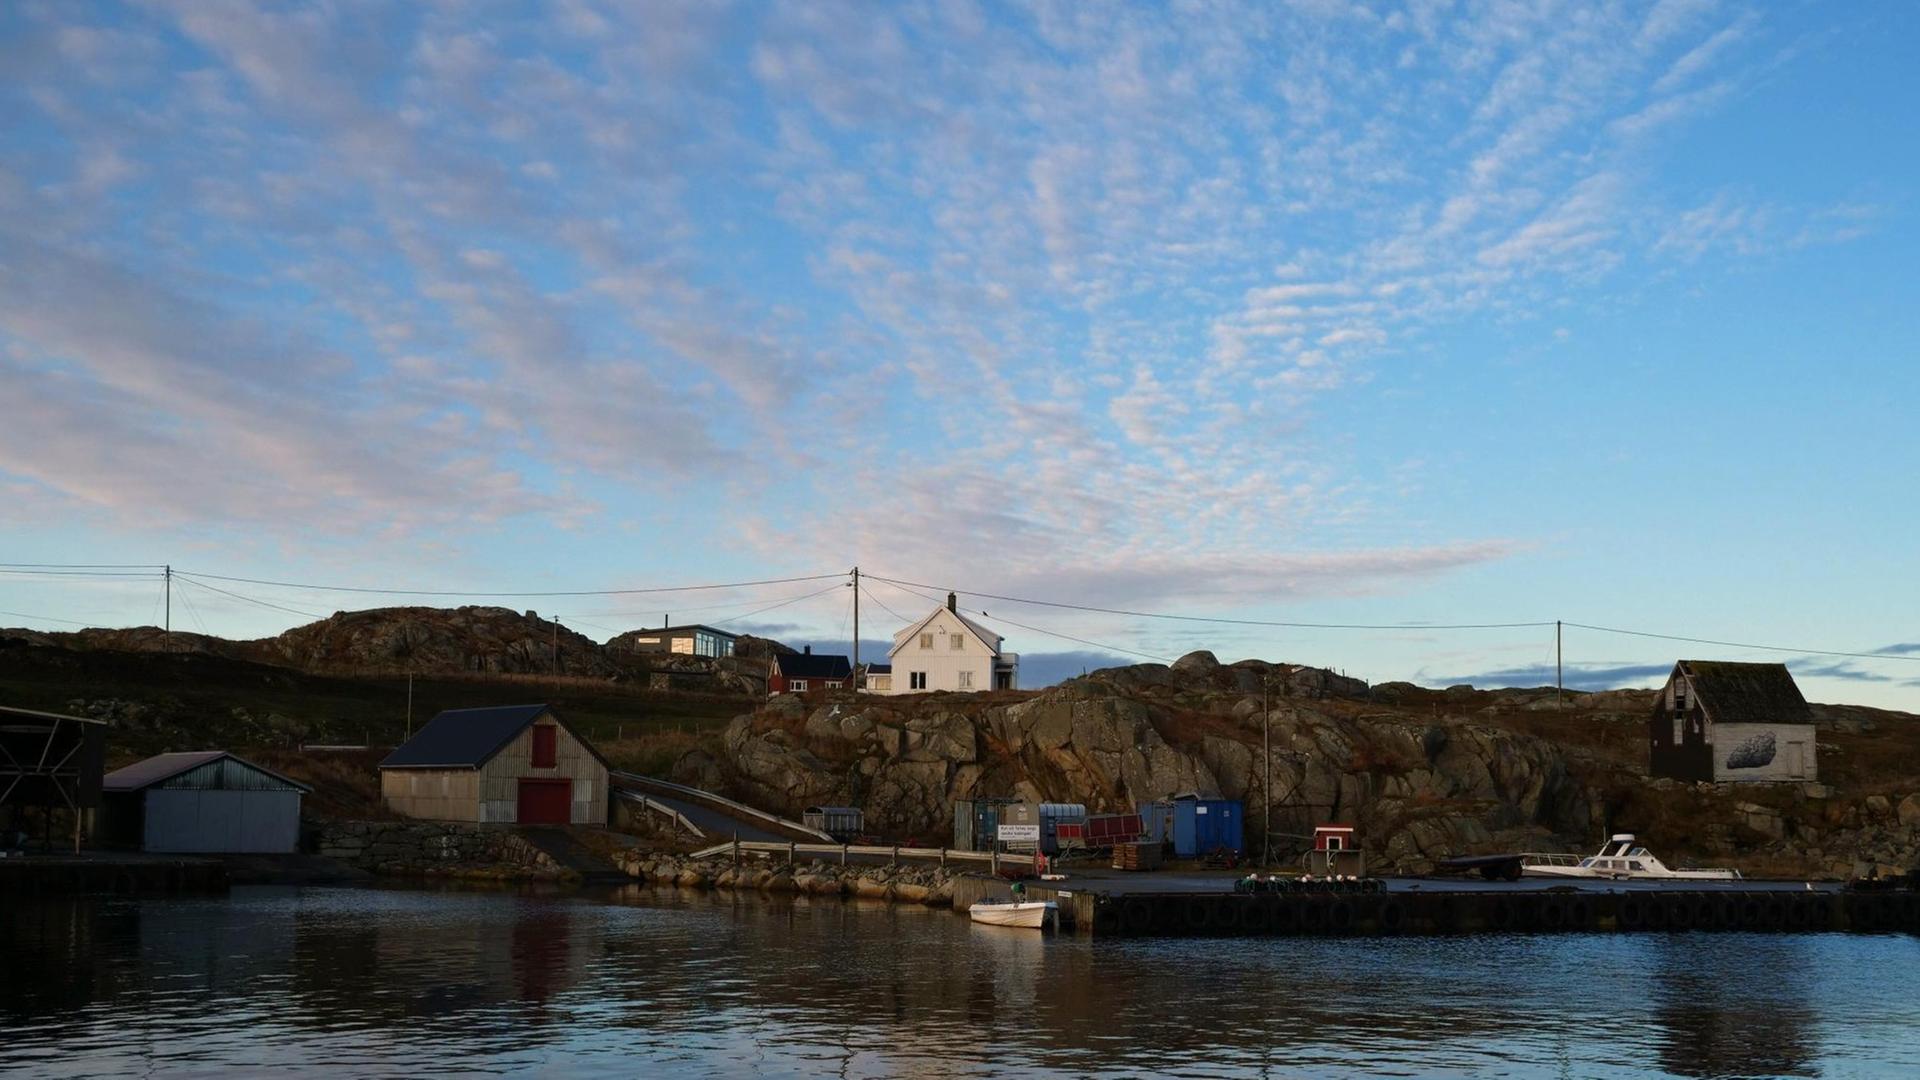 Der Hafen von Utsira, eine kleine Insel vor der Küste Norwegens